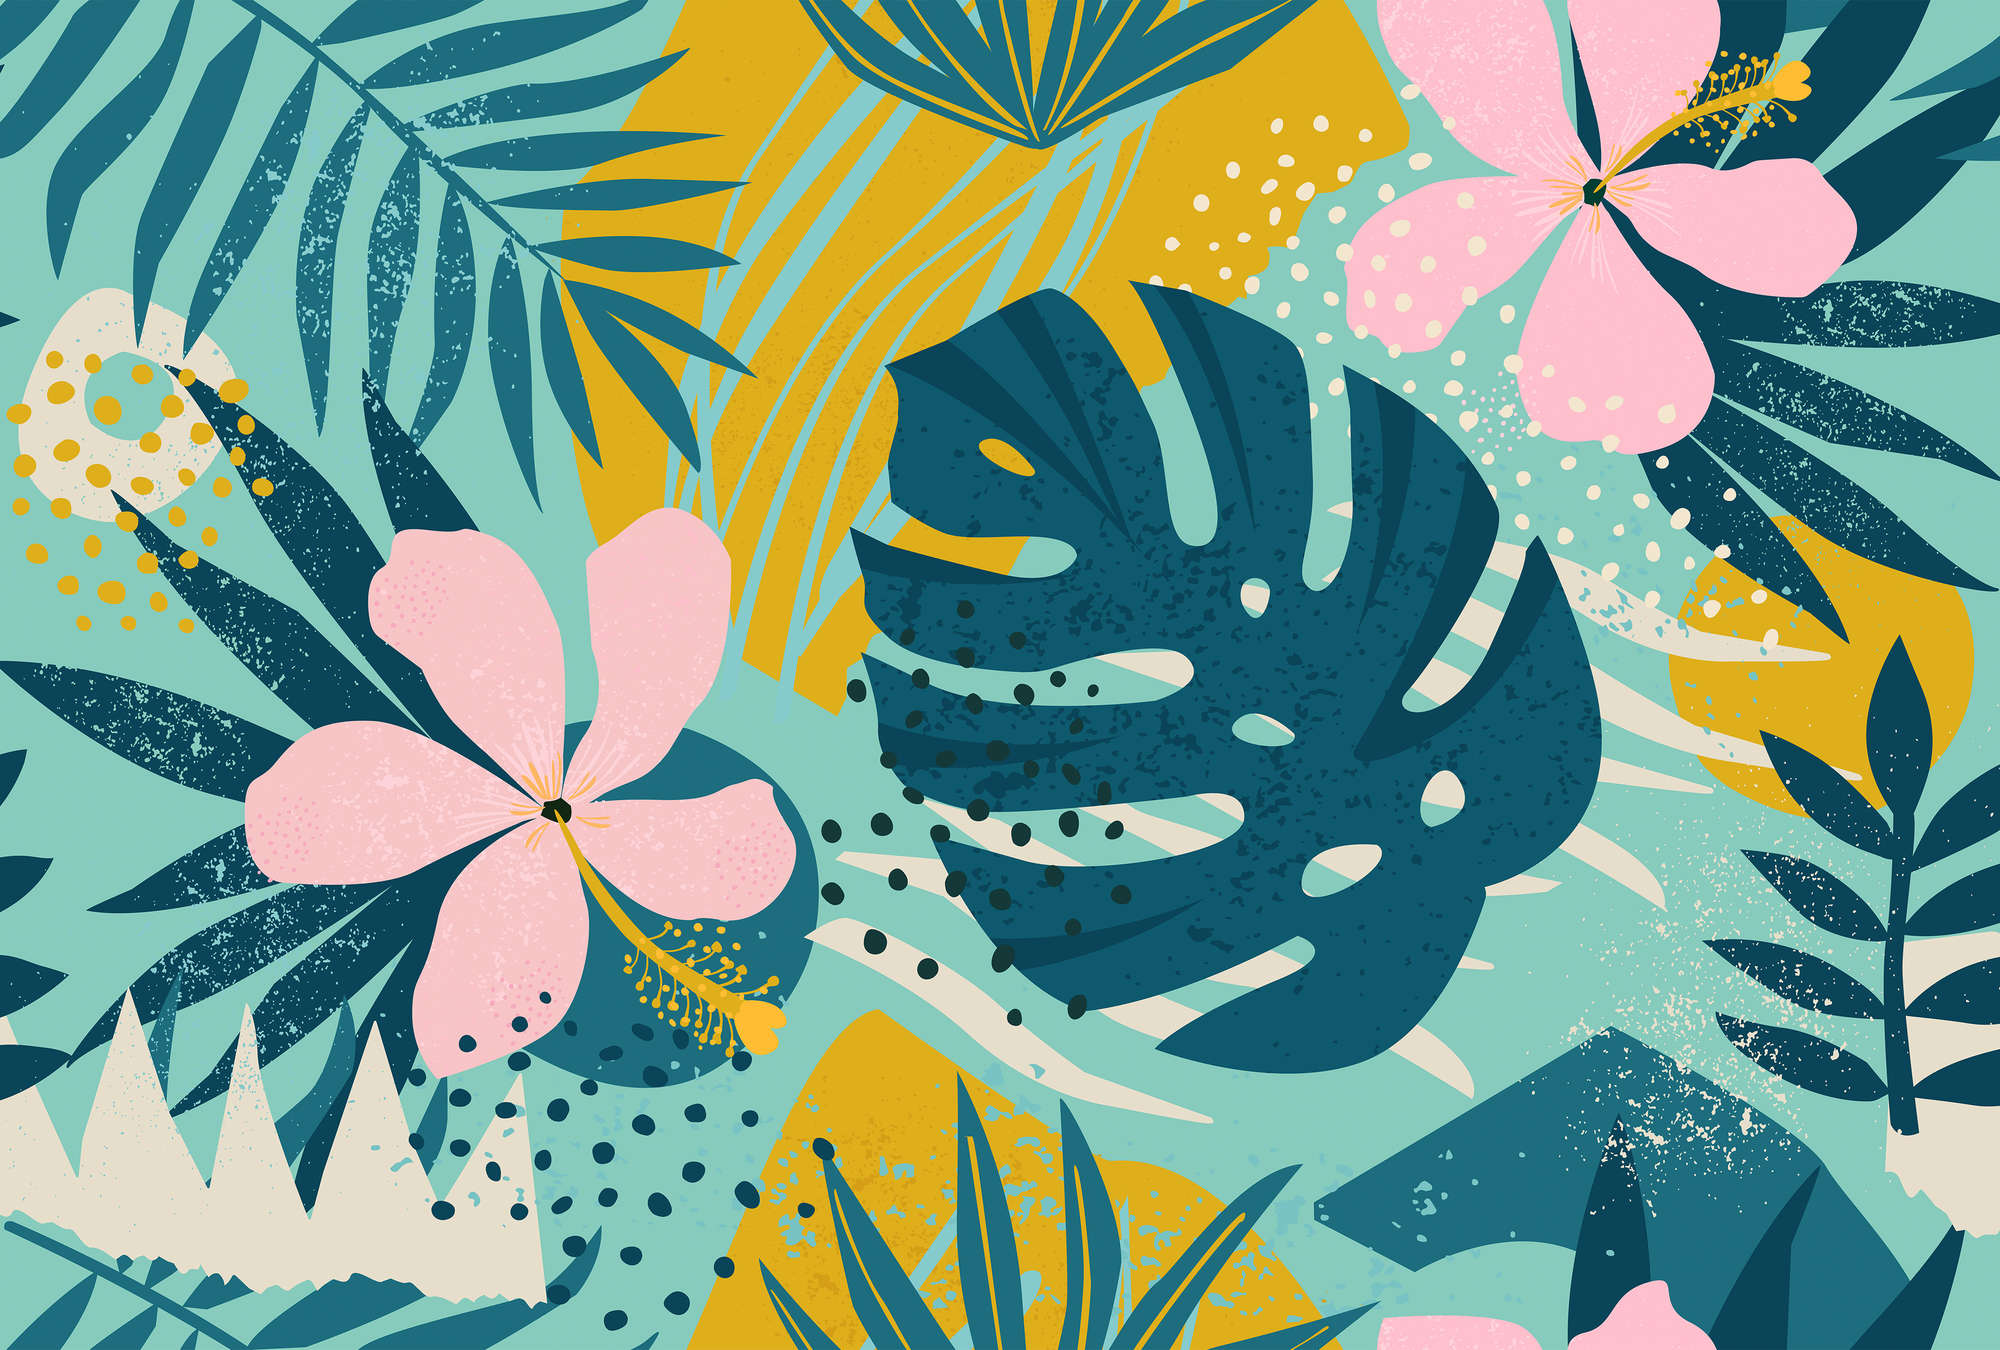             Jungle Print Behang Hawaii met Bladeren & Bloemen
        